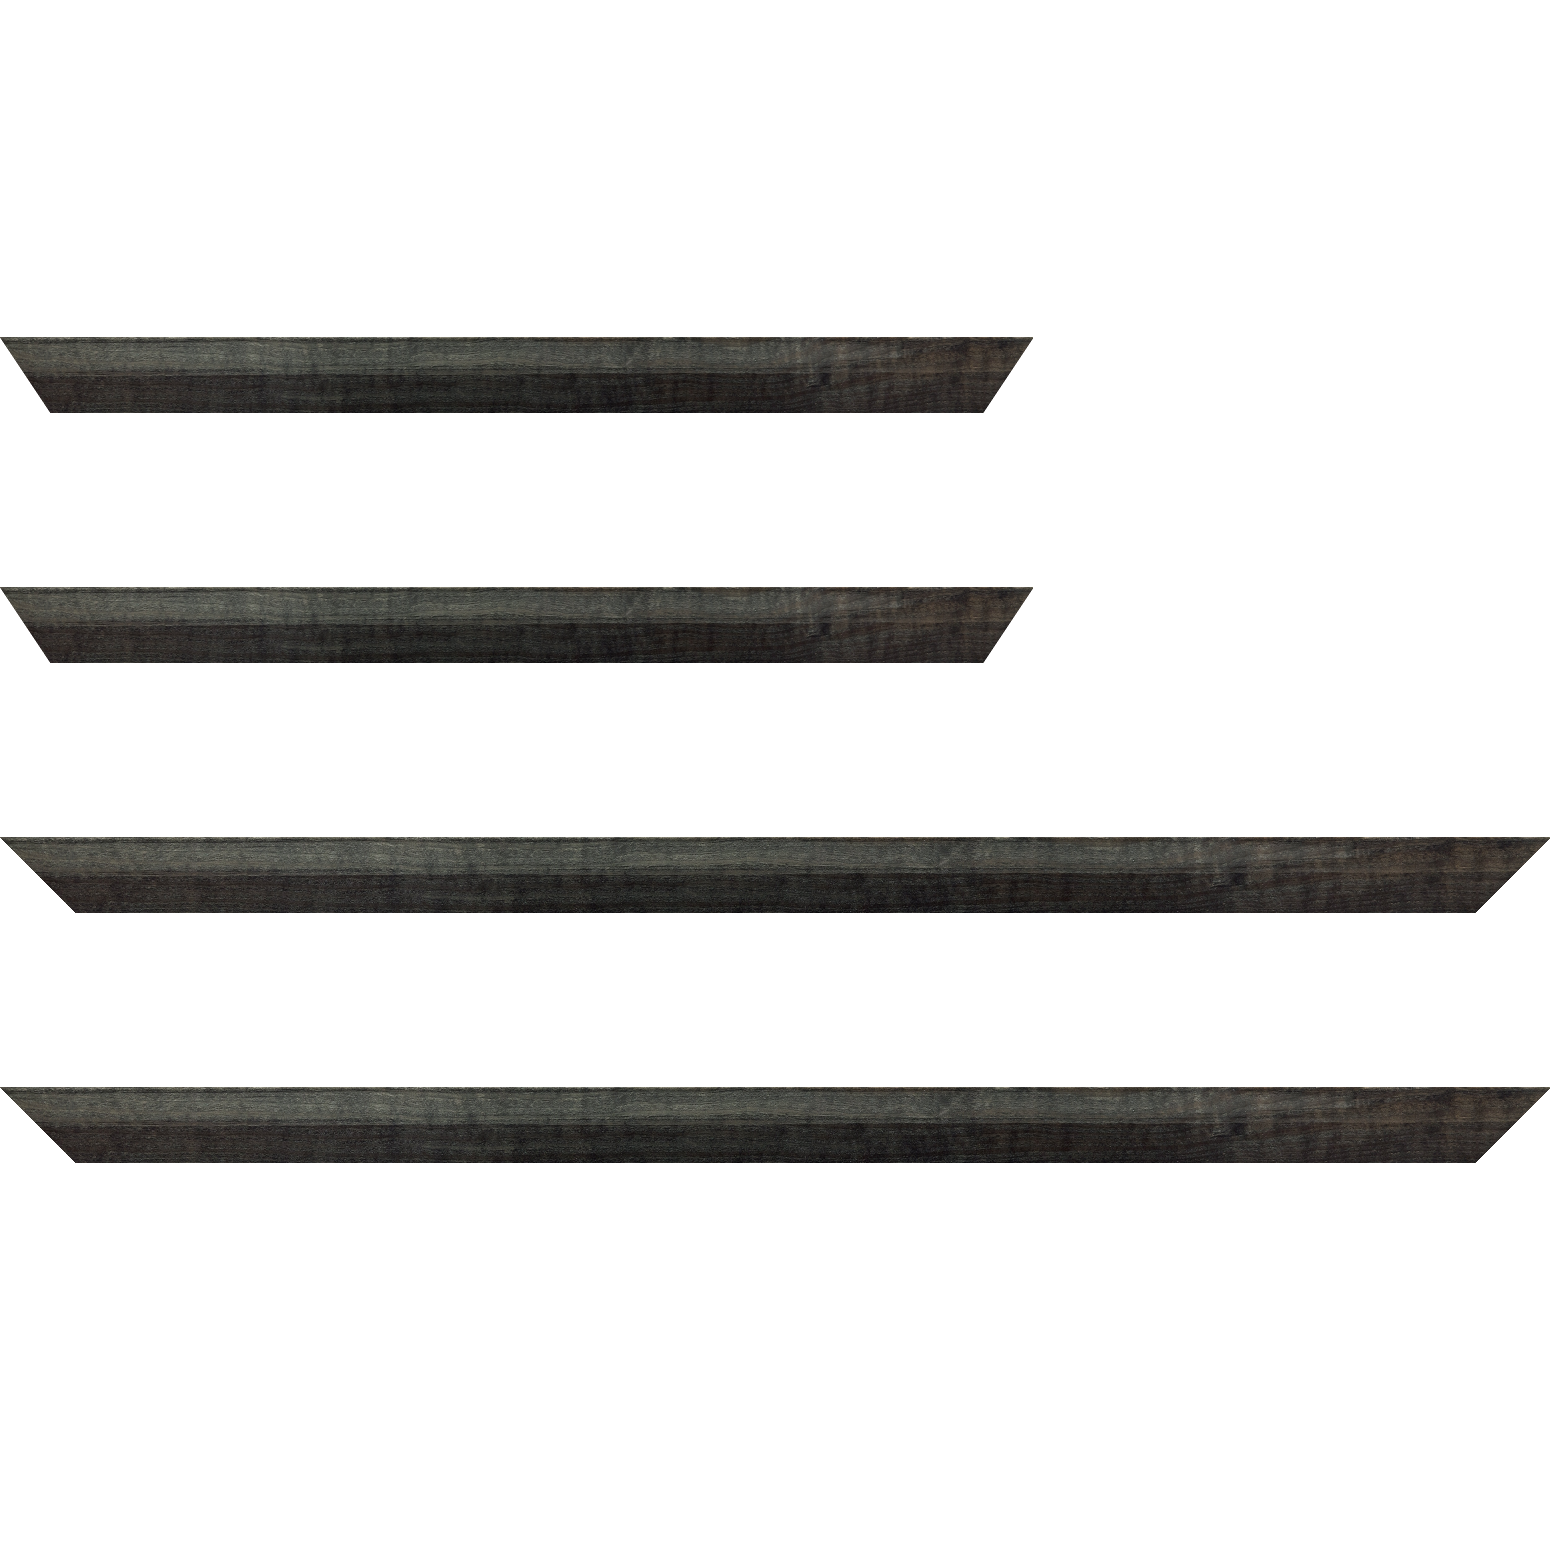 Baguette bois profil arrondi en pente plongeant largeur 2.4cm couleur  gris foncé anthracite finition vernis brillant,veine du bois  apparent (pin) , - 92x60